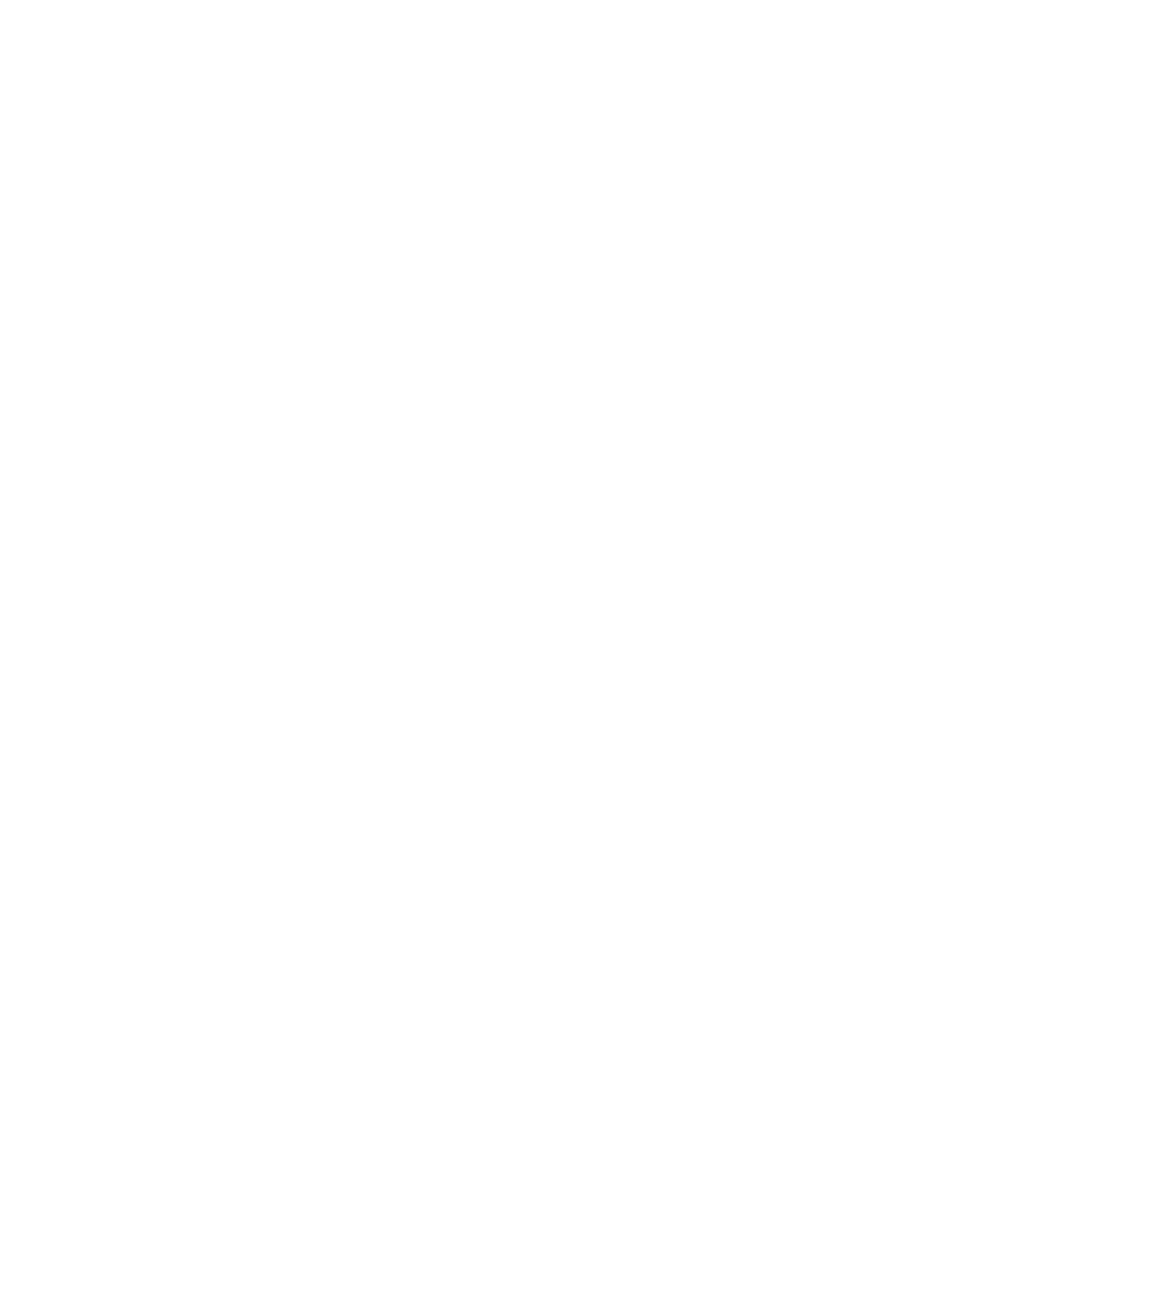 Azaan Institute